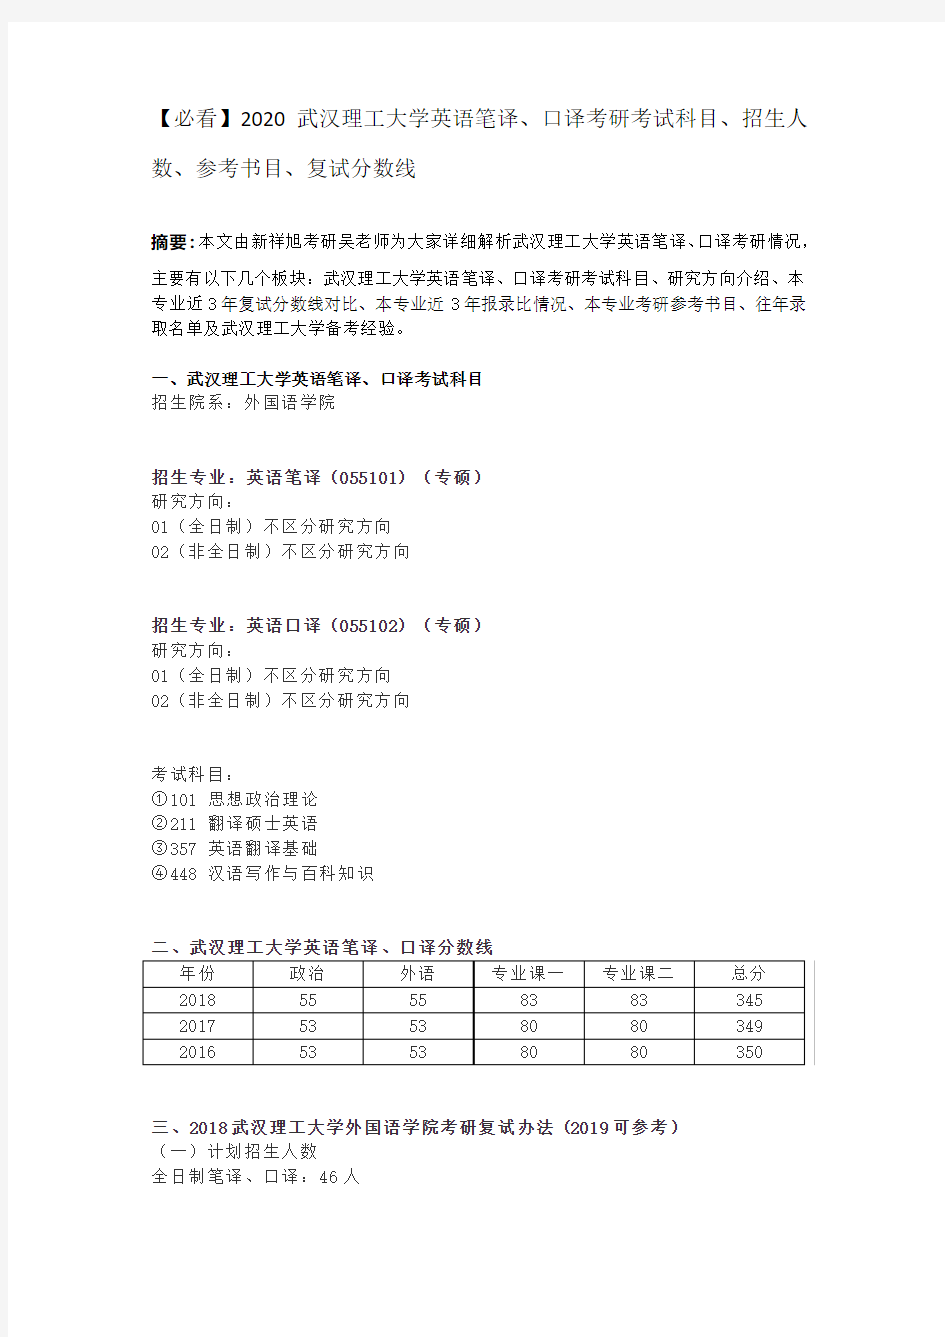 【必看】2020武汉理工大学英语笔译、口译考研考试科目、招生人数、参考书目、复试分数线